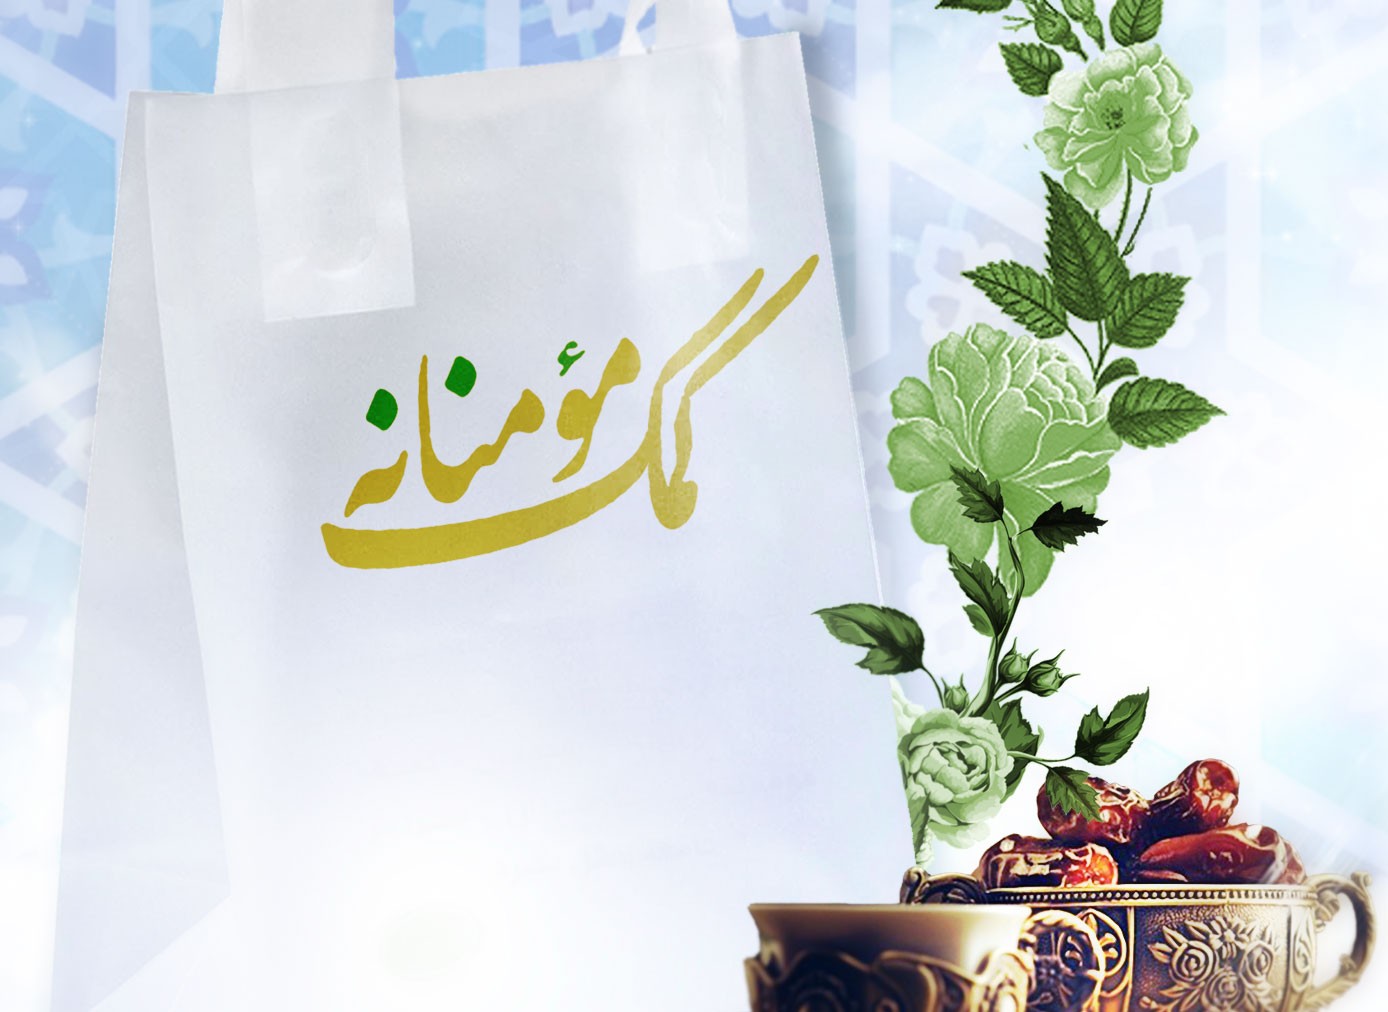 شروع پویش اطعام نیازمندان در اصفهان